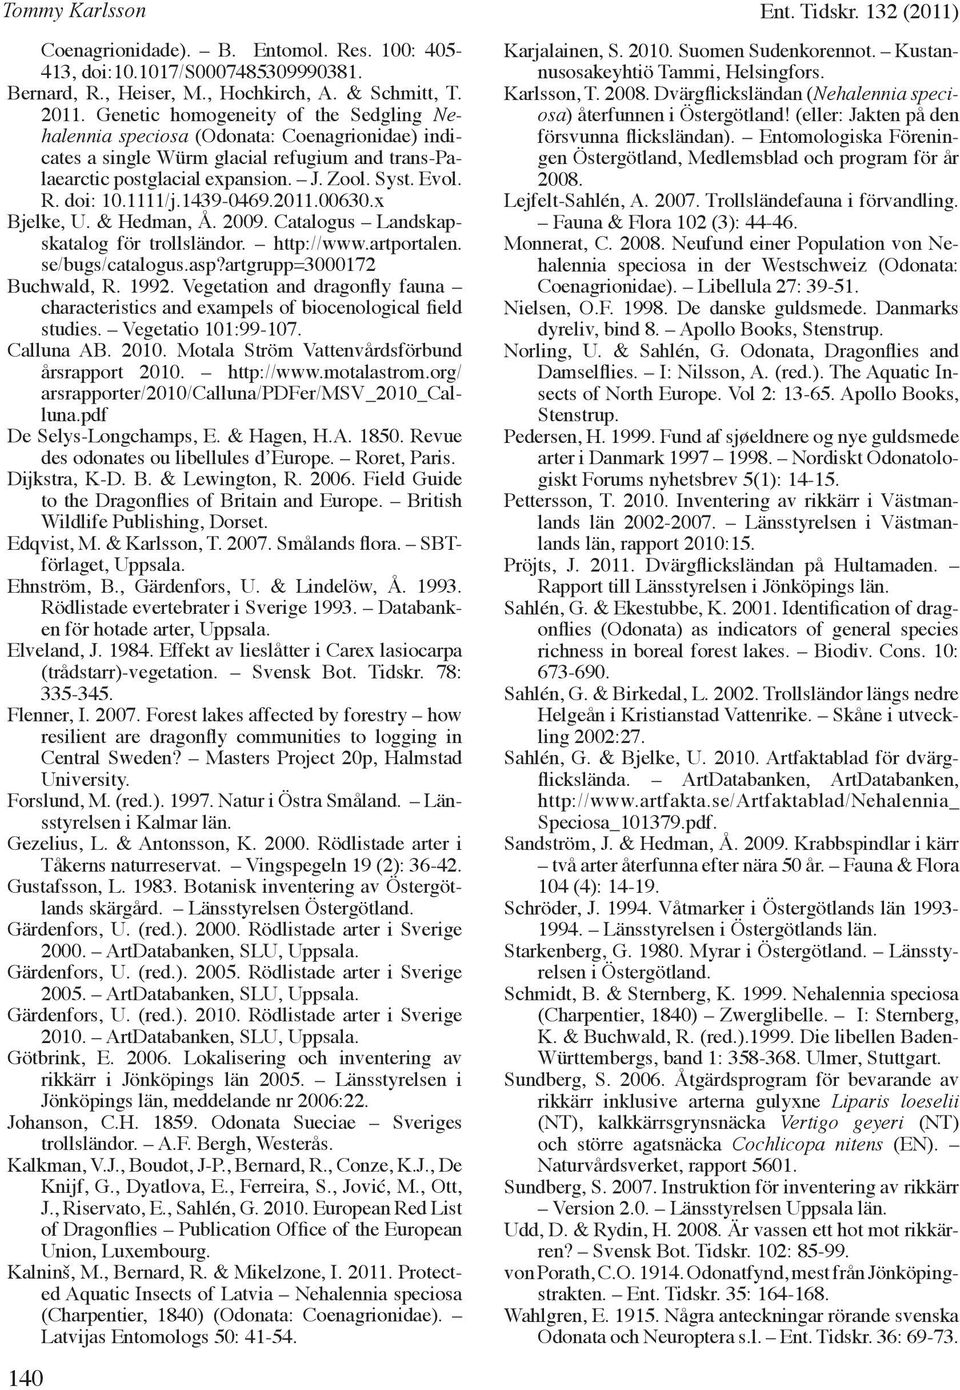 1111/j.1439-0469.2011.00630.x Bjelke, U. & Hedman, Å. 2009. Catalogus Landskapskatalog för trollsländor. http://www.artportalen. se/bugs/catalogus.asp?artgrupp=3000172 Buchwald, R. 1992.